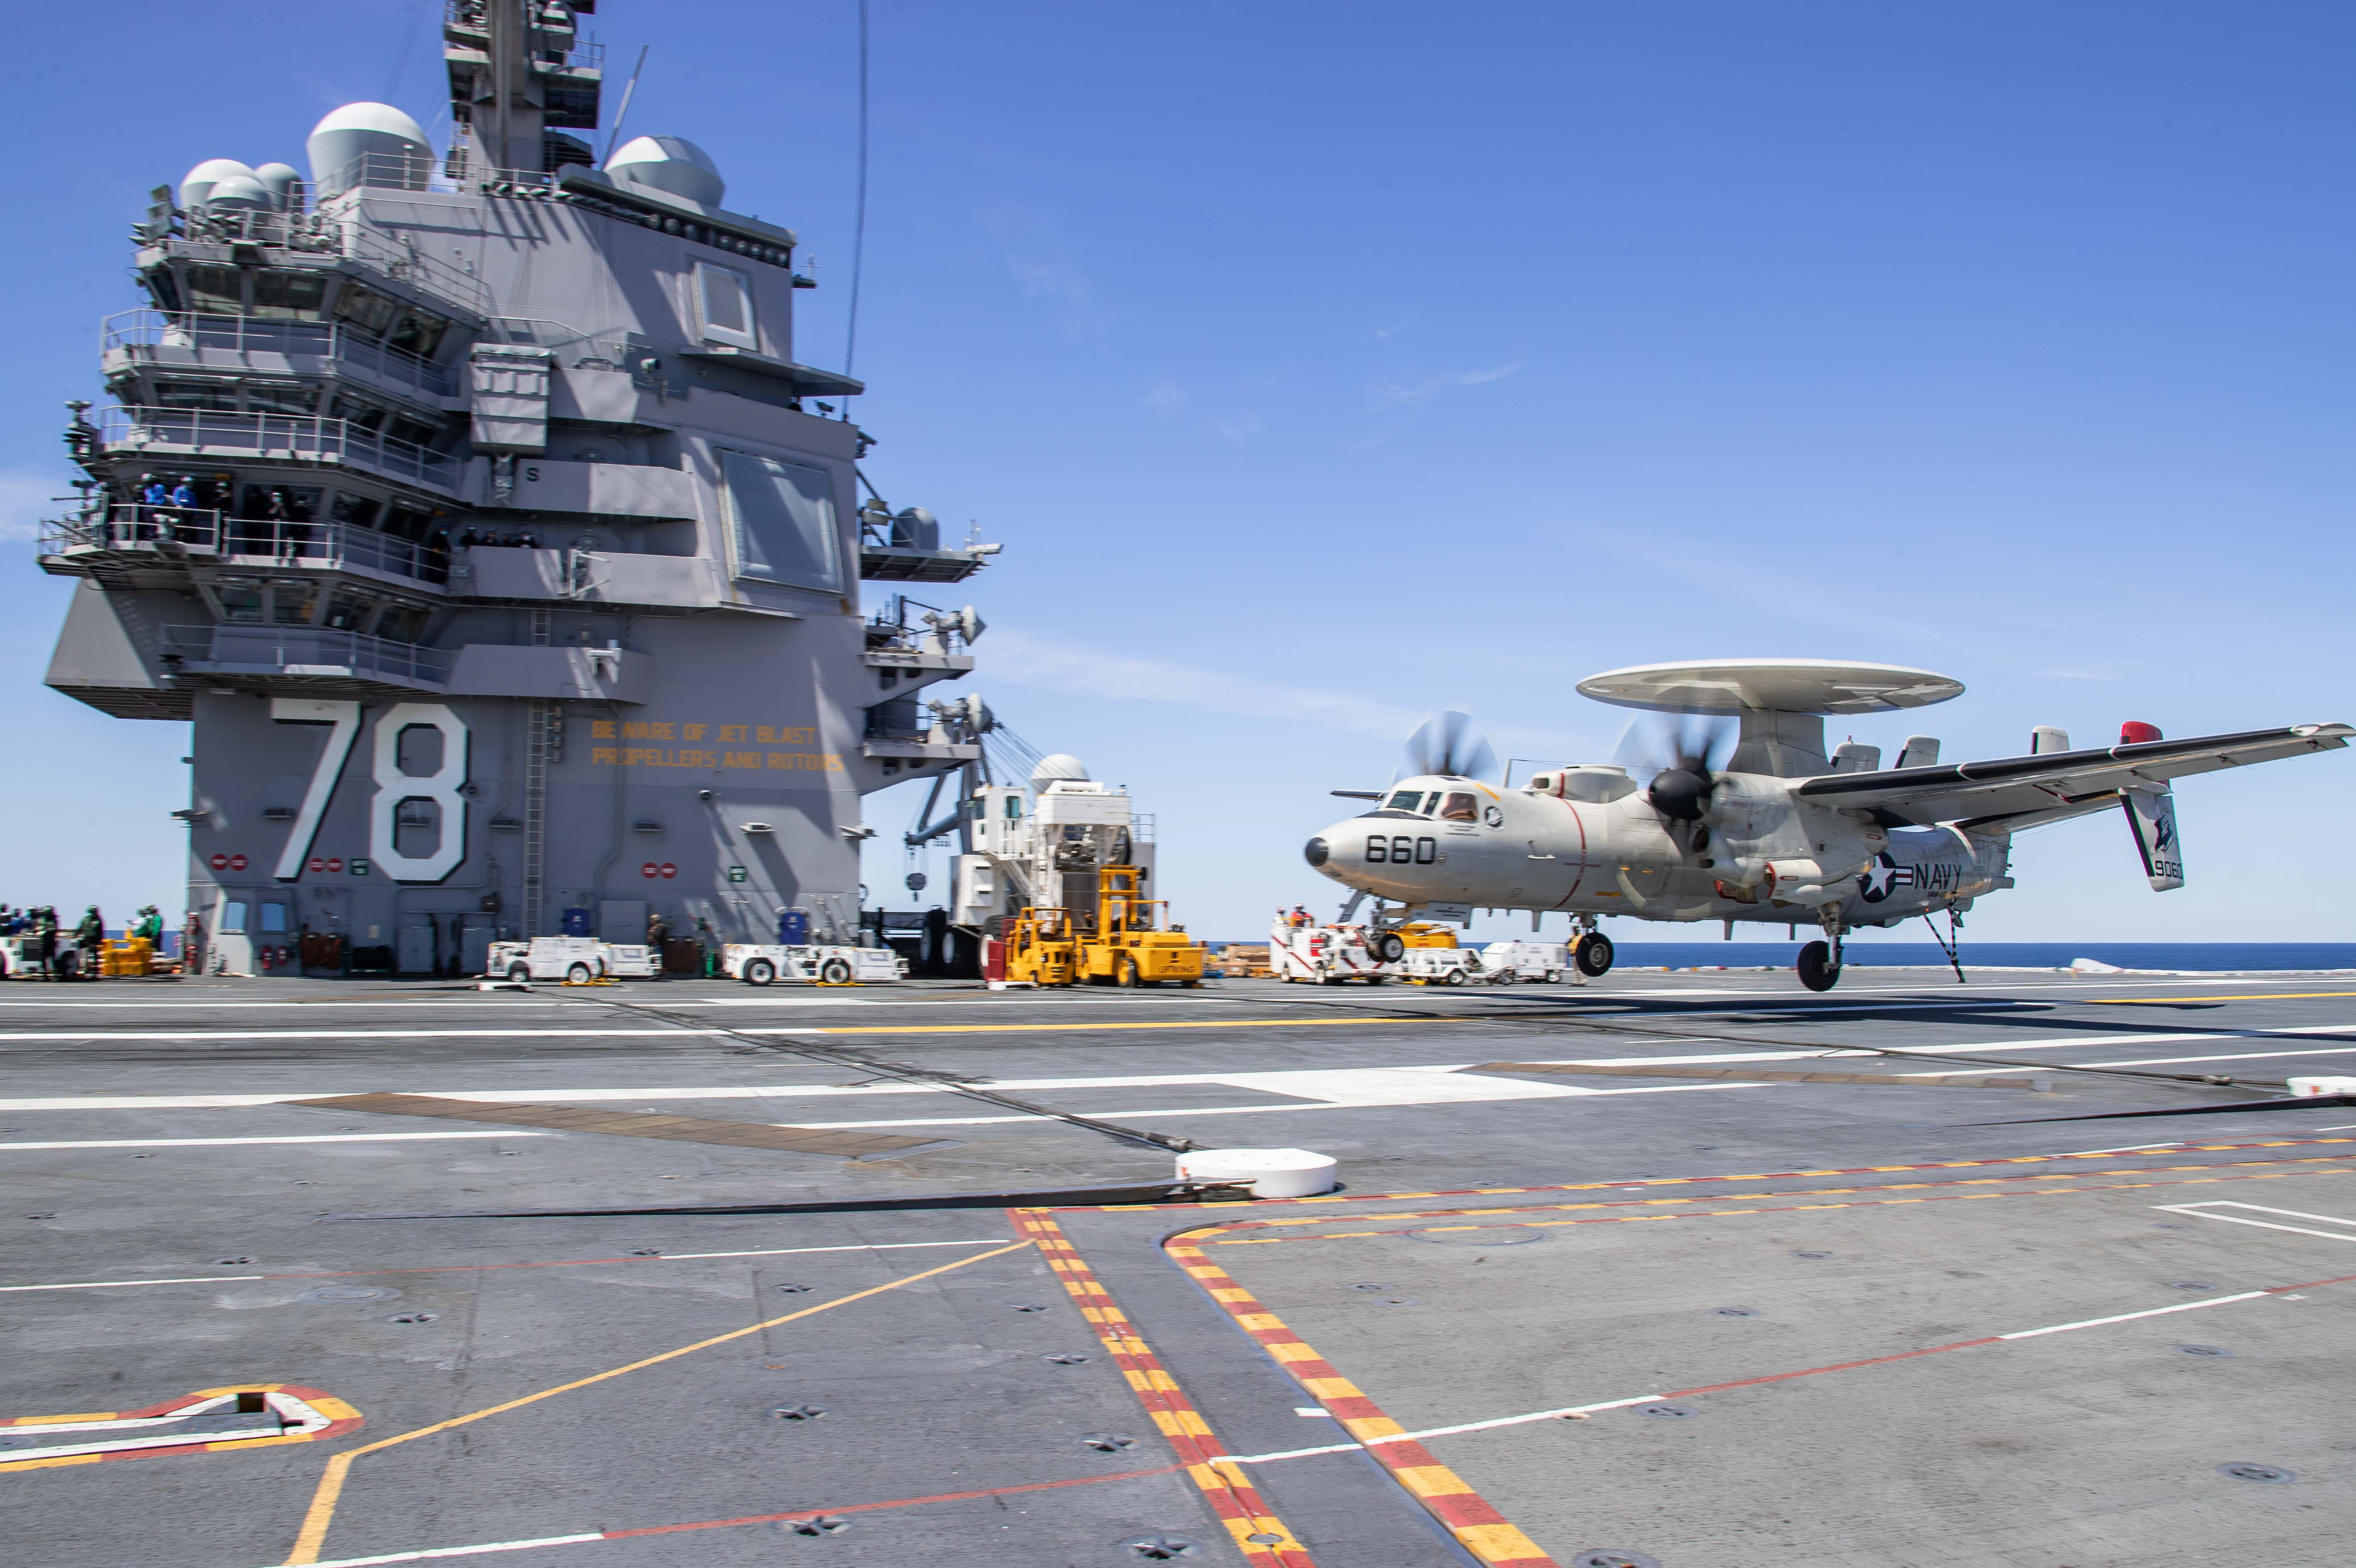 Головной американский авианосец нового поколения USS Gerald R.Ford (CVN 78) снова в море: посадка E-2D Advanced Hawkeye 120-й палубной эскадрильи ДРЛОУ (Greyhawks), фото сделано 10 мая 2020 года в Атлантическом океане